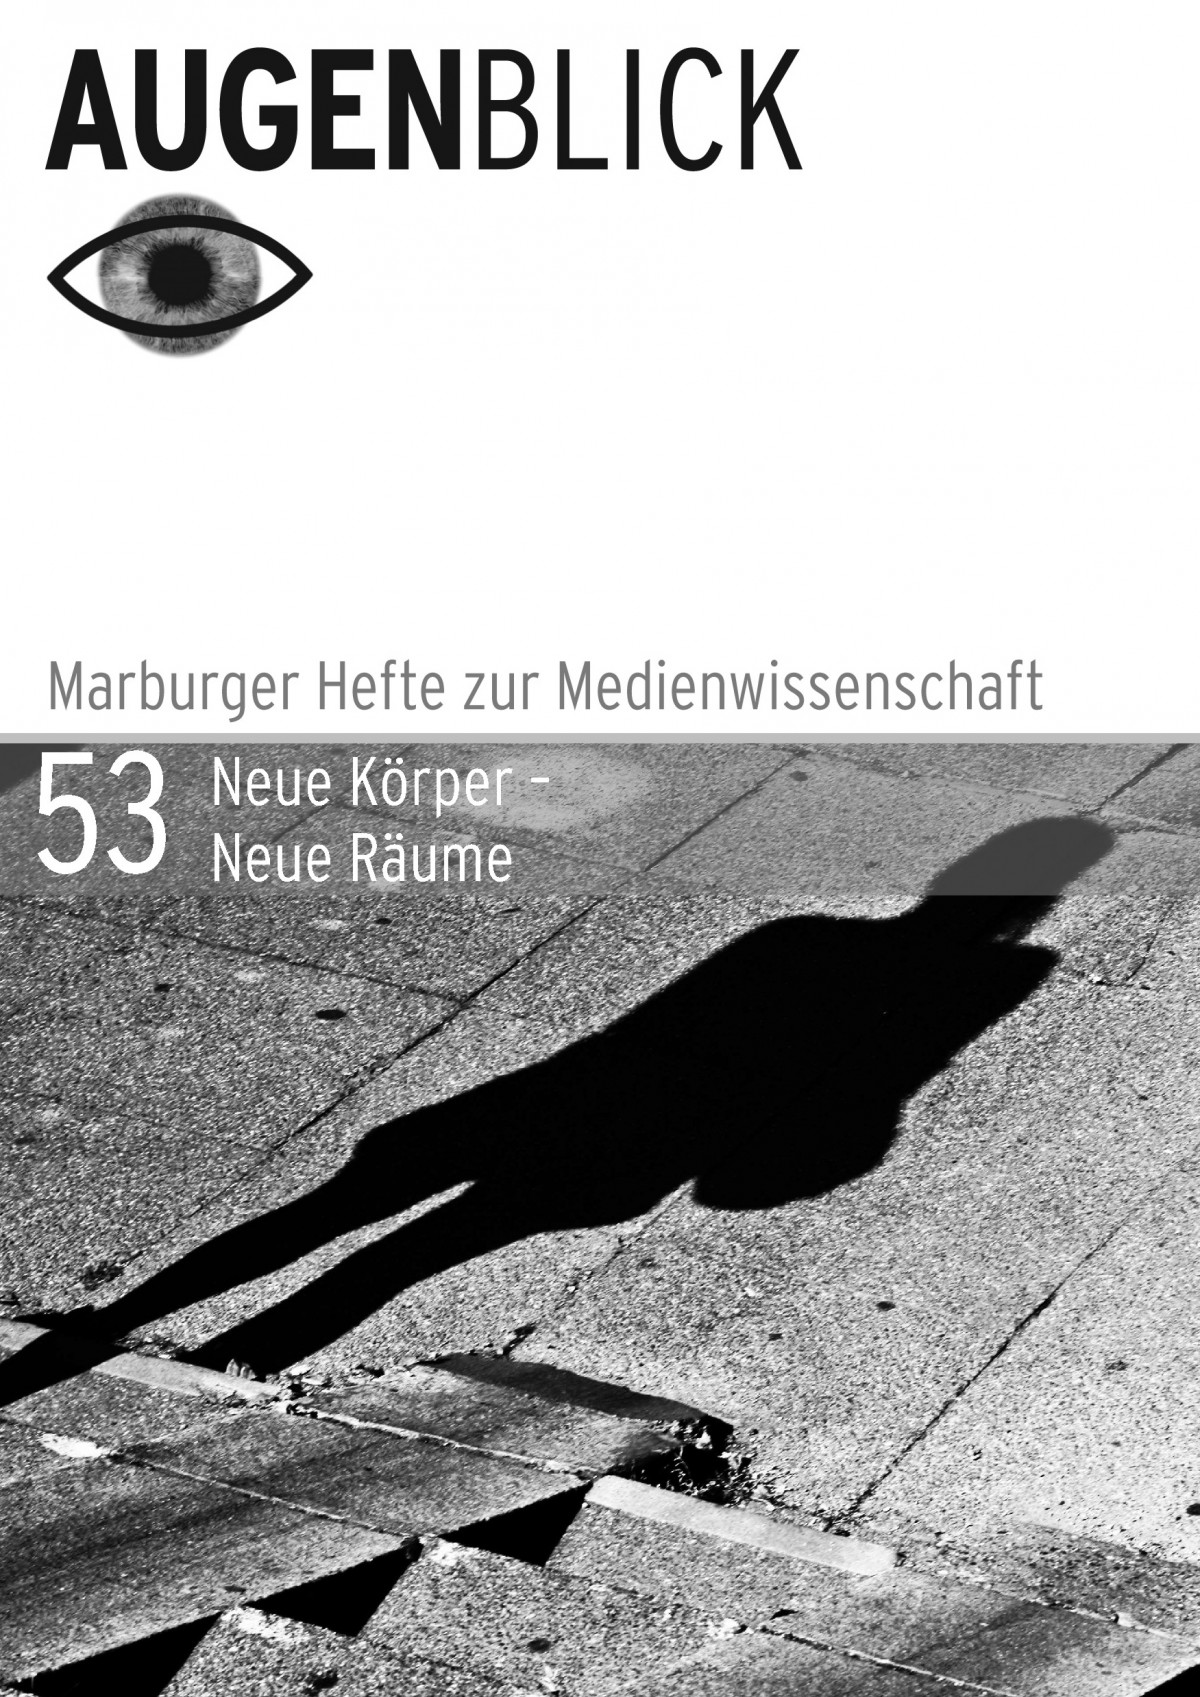 Cover der Zeitschrift Augenblick, Ausgabe 53